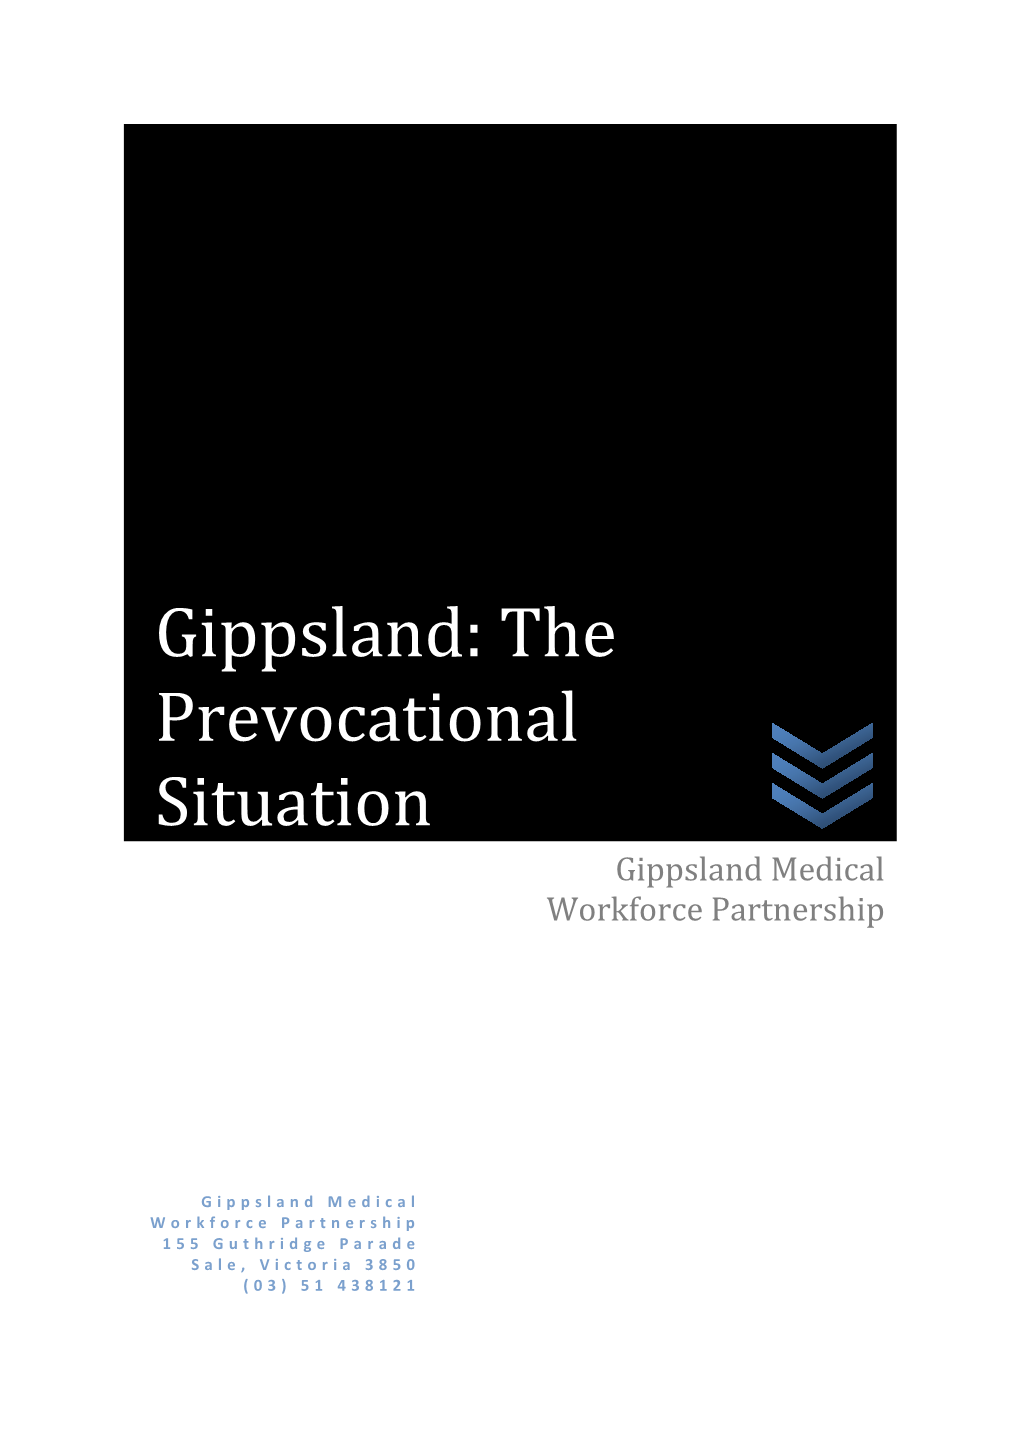 Gippsland Health Alliance